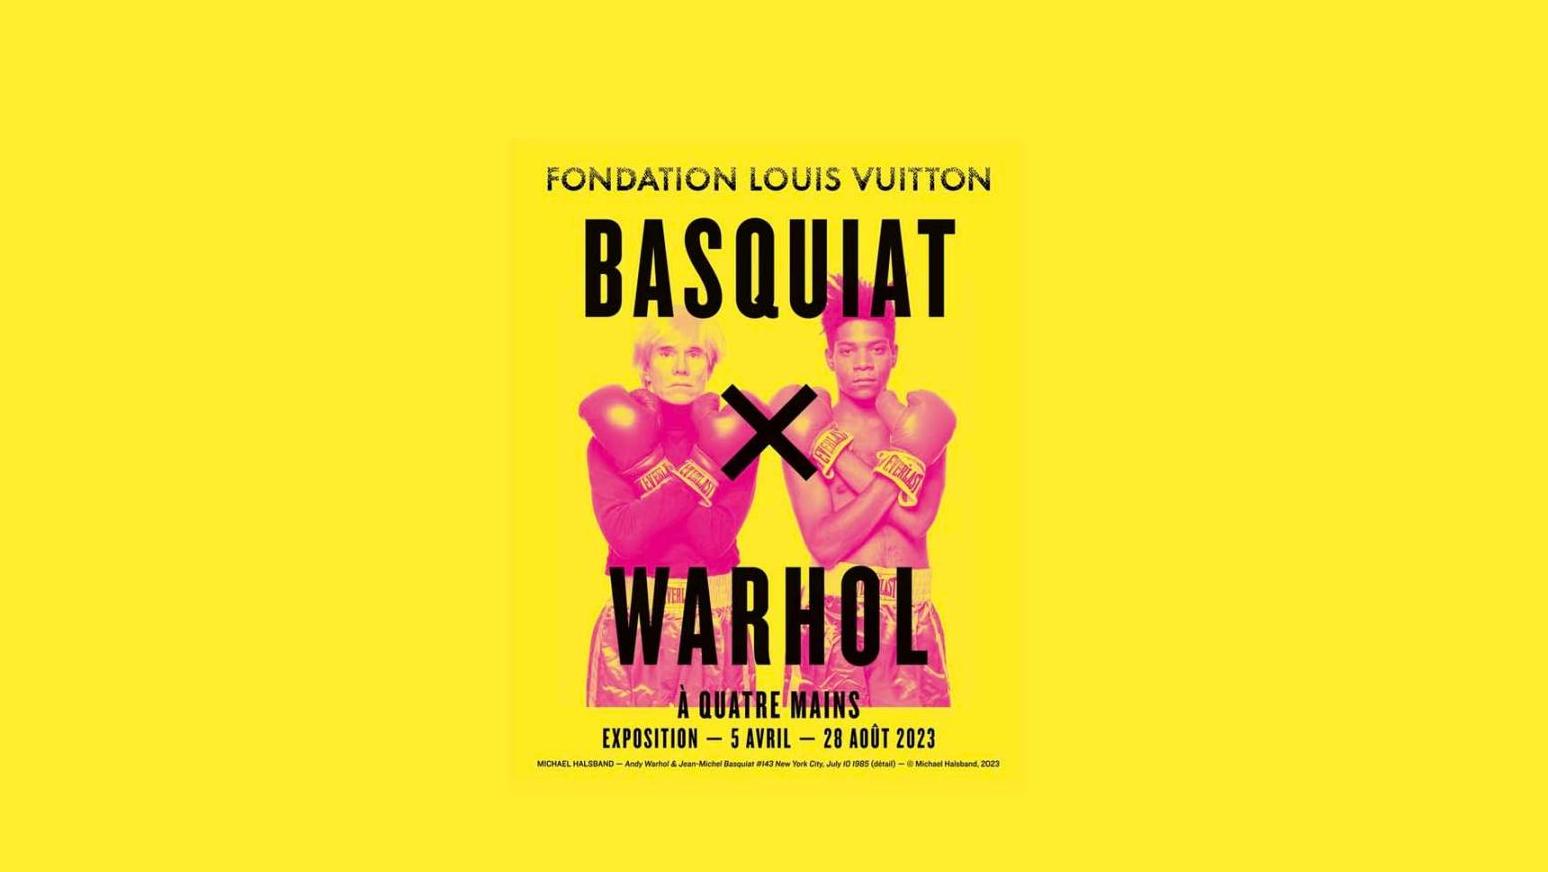 © Fondation Vuitton (affiche de l'exposition "Basquiat x Warhol, à quatre mains"... L’Observatoire : Basquiat-Warhol, duo convoité 